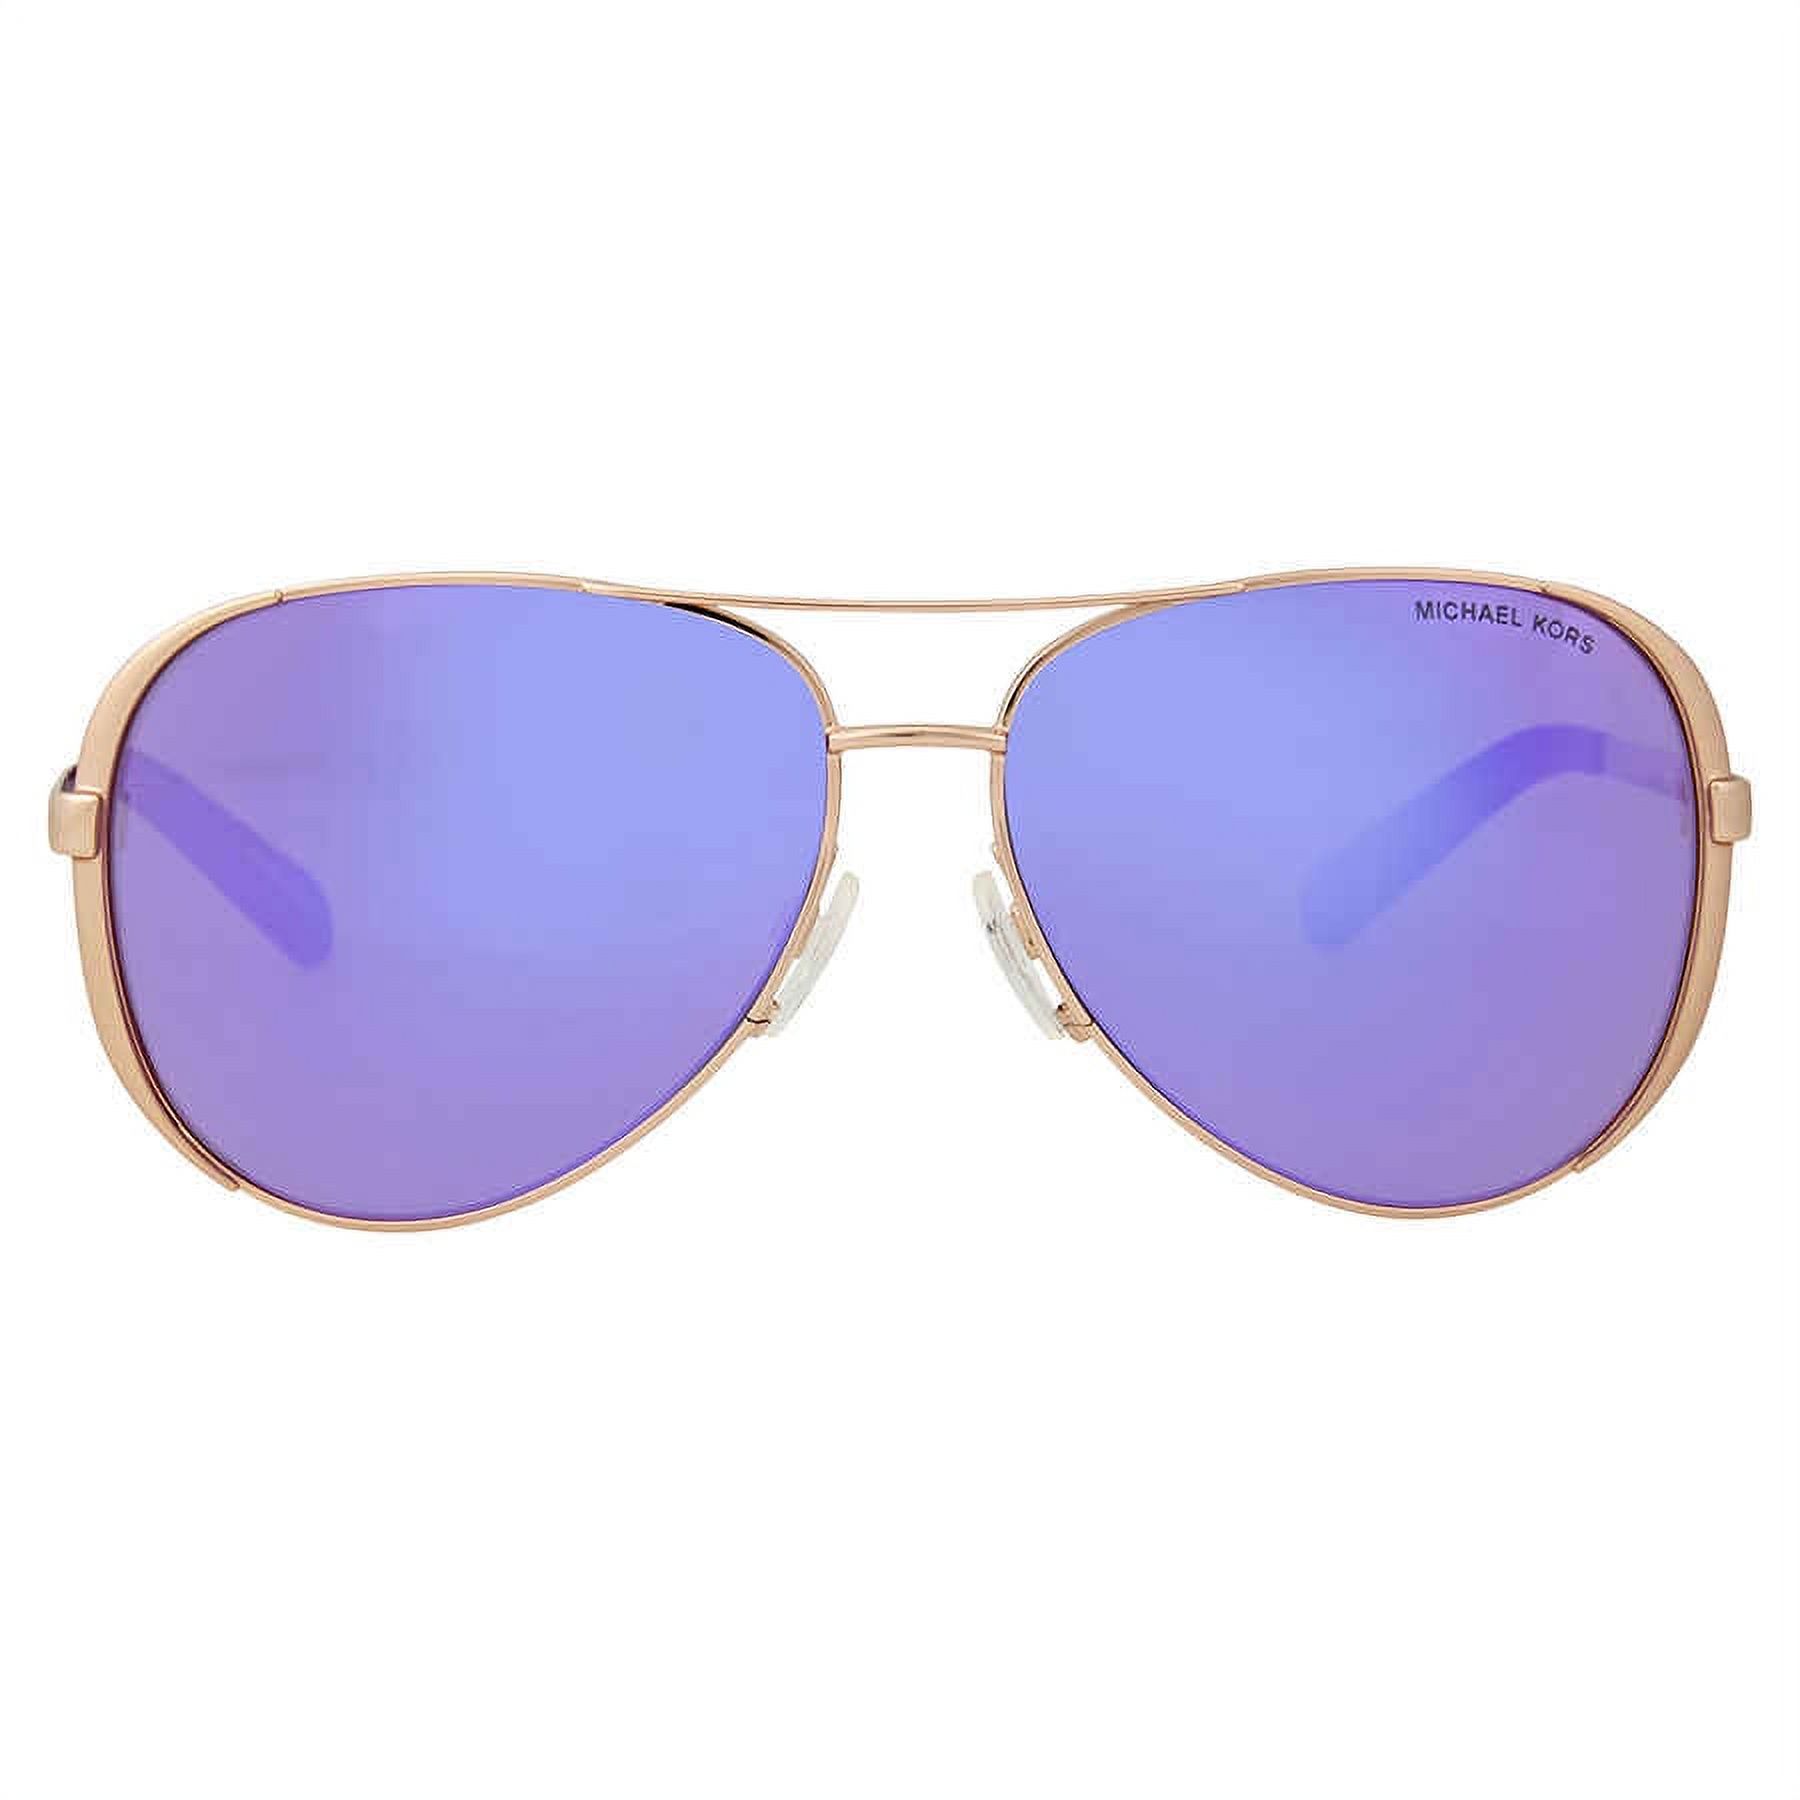 Michael Kors Women's Mirrored Chelsea MK5004-10034V-59 Rose Gold Aviator Sunglasses - image 1 of 3